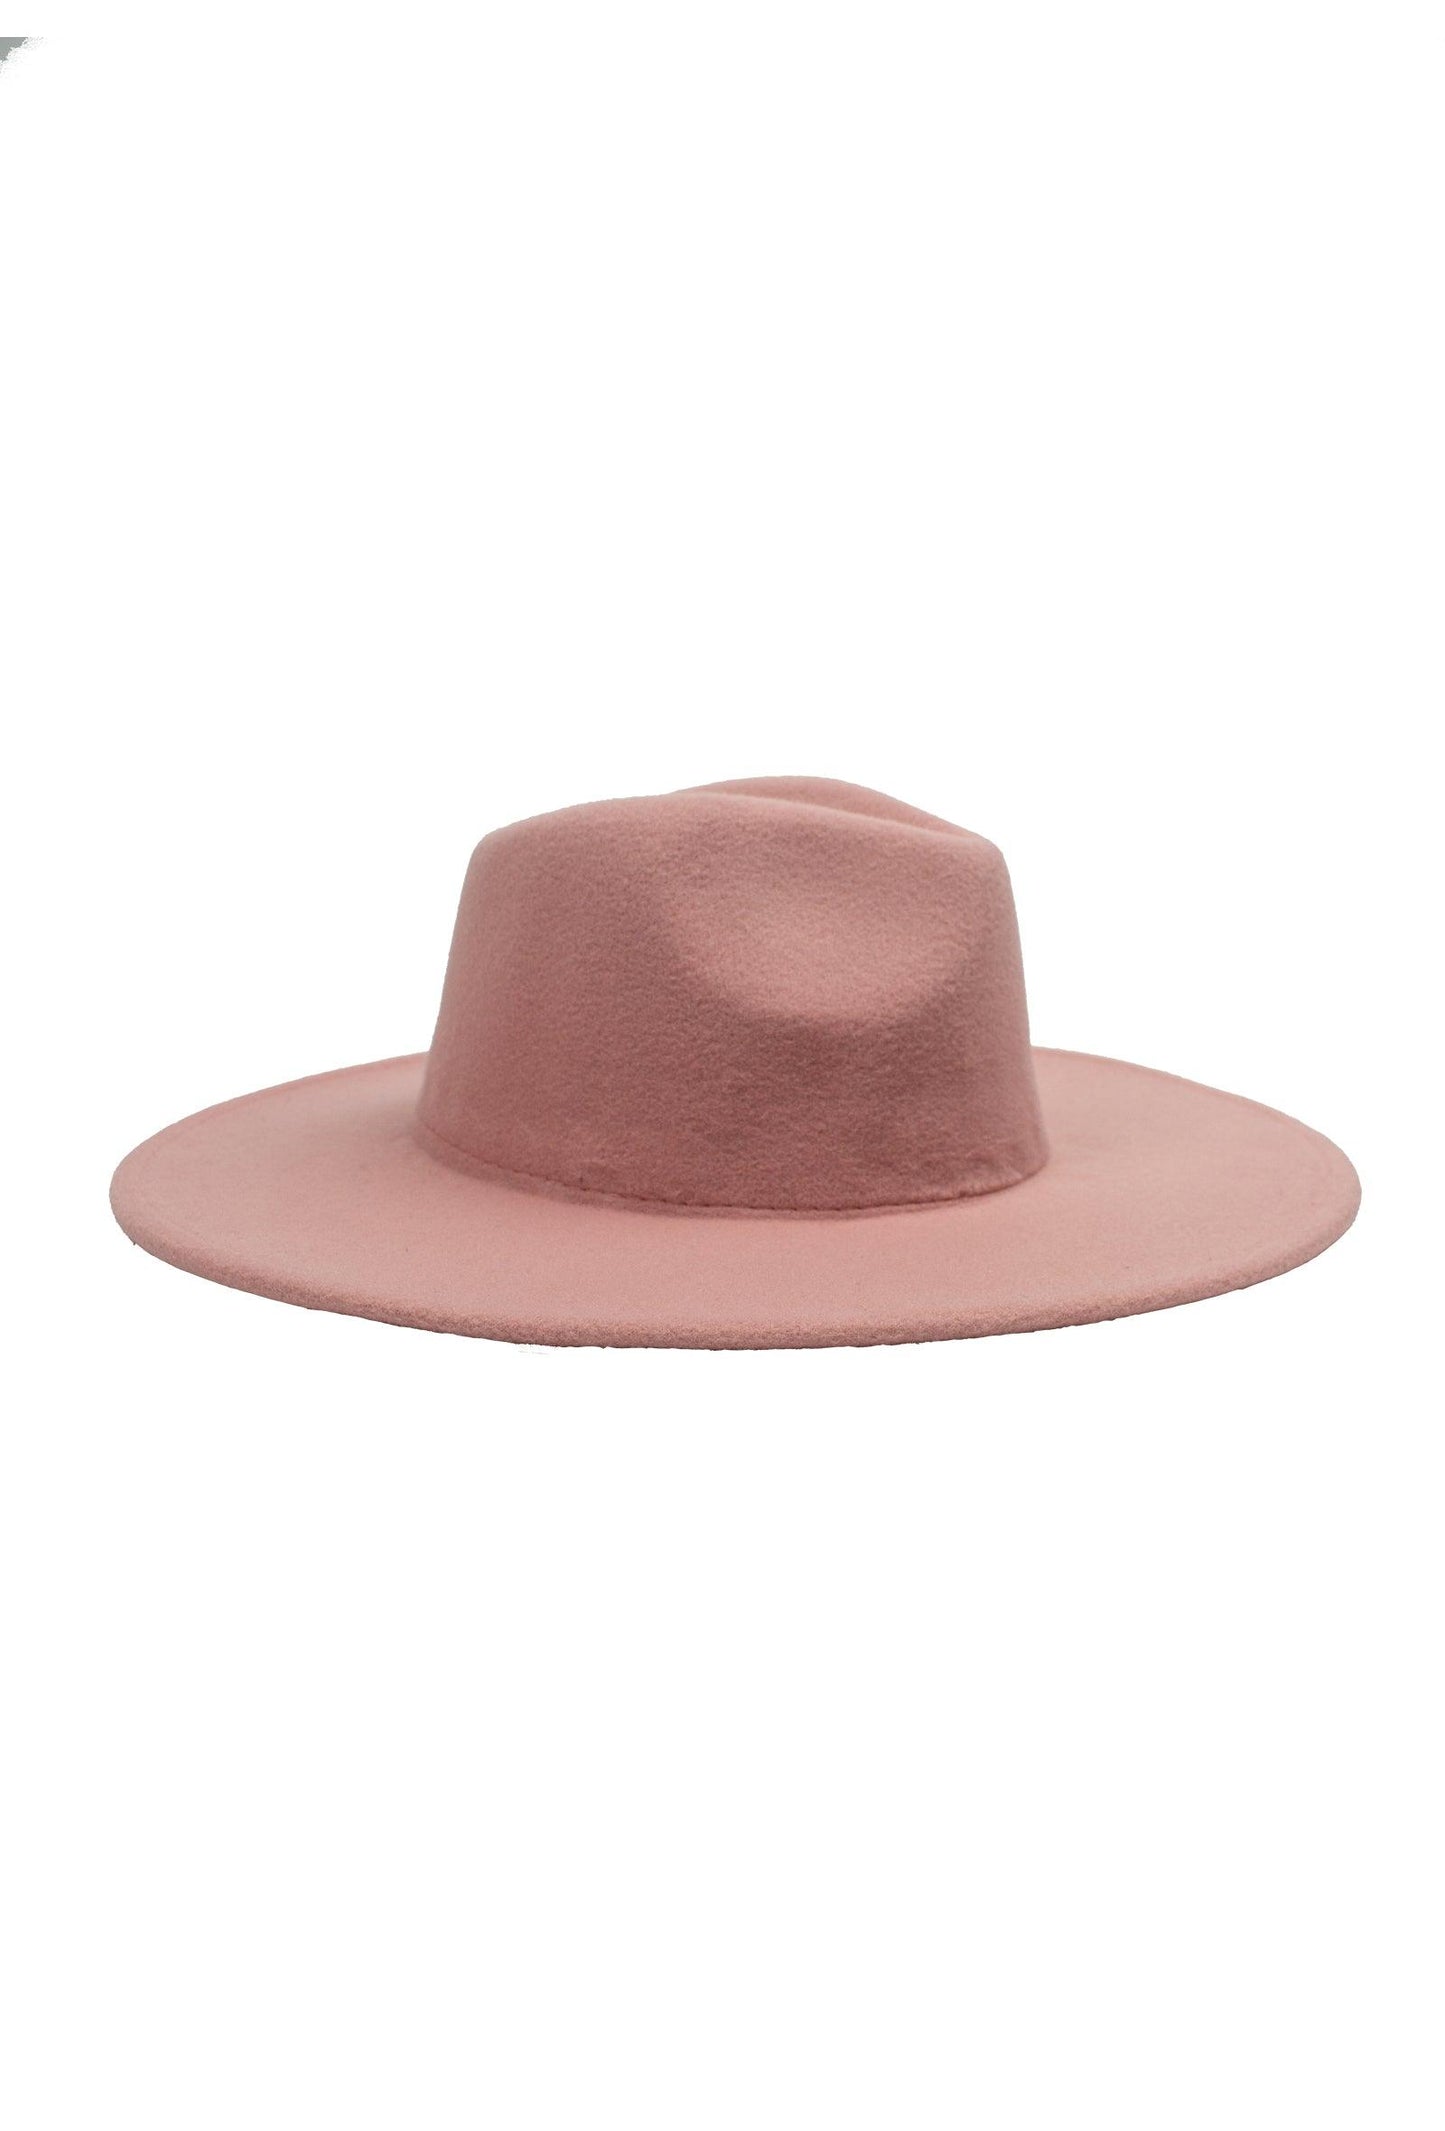 Rózsaszín kalap - Chili dresses - Kiegészítő